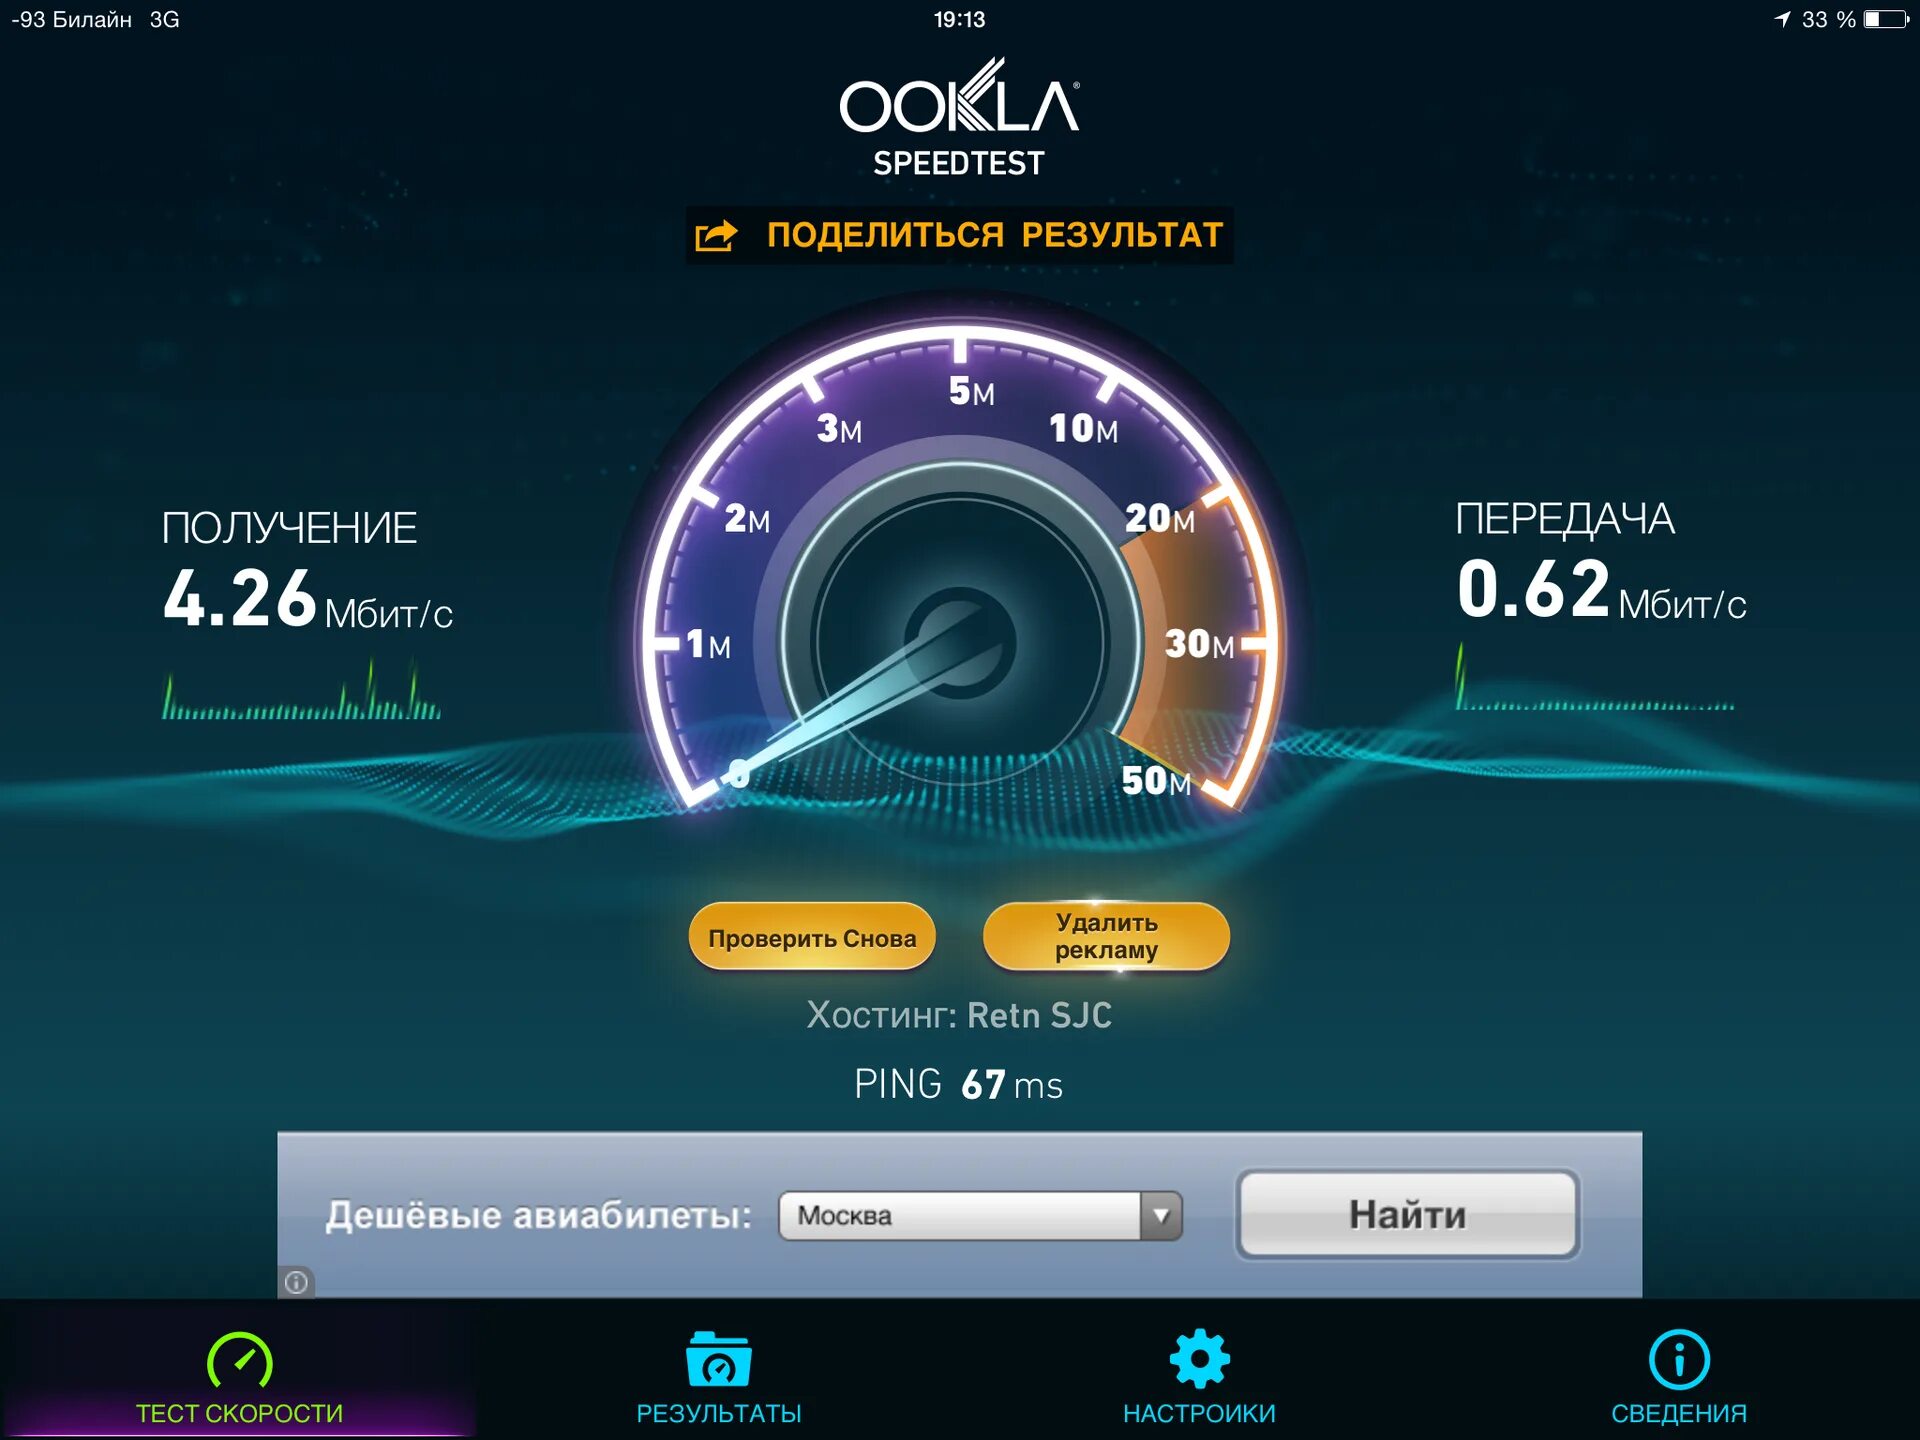 Скоростной интернет. Скорость интернета. Глобальный тест скорости интернета. Спидтест скорости интернета мтс